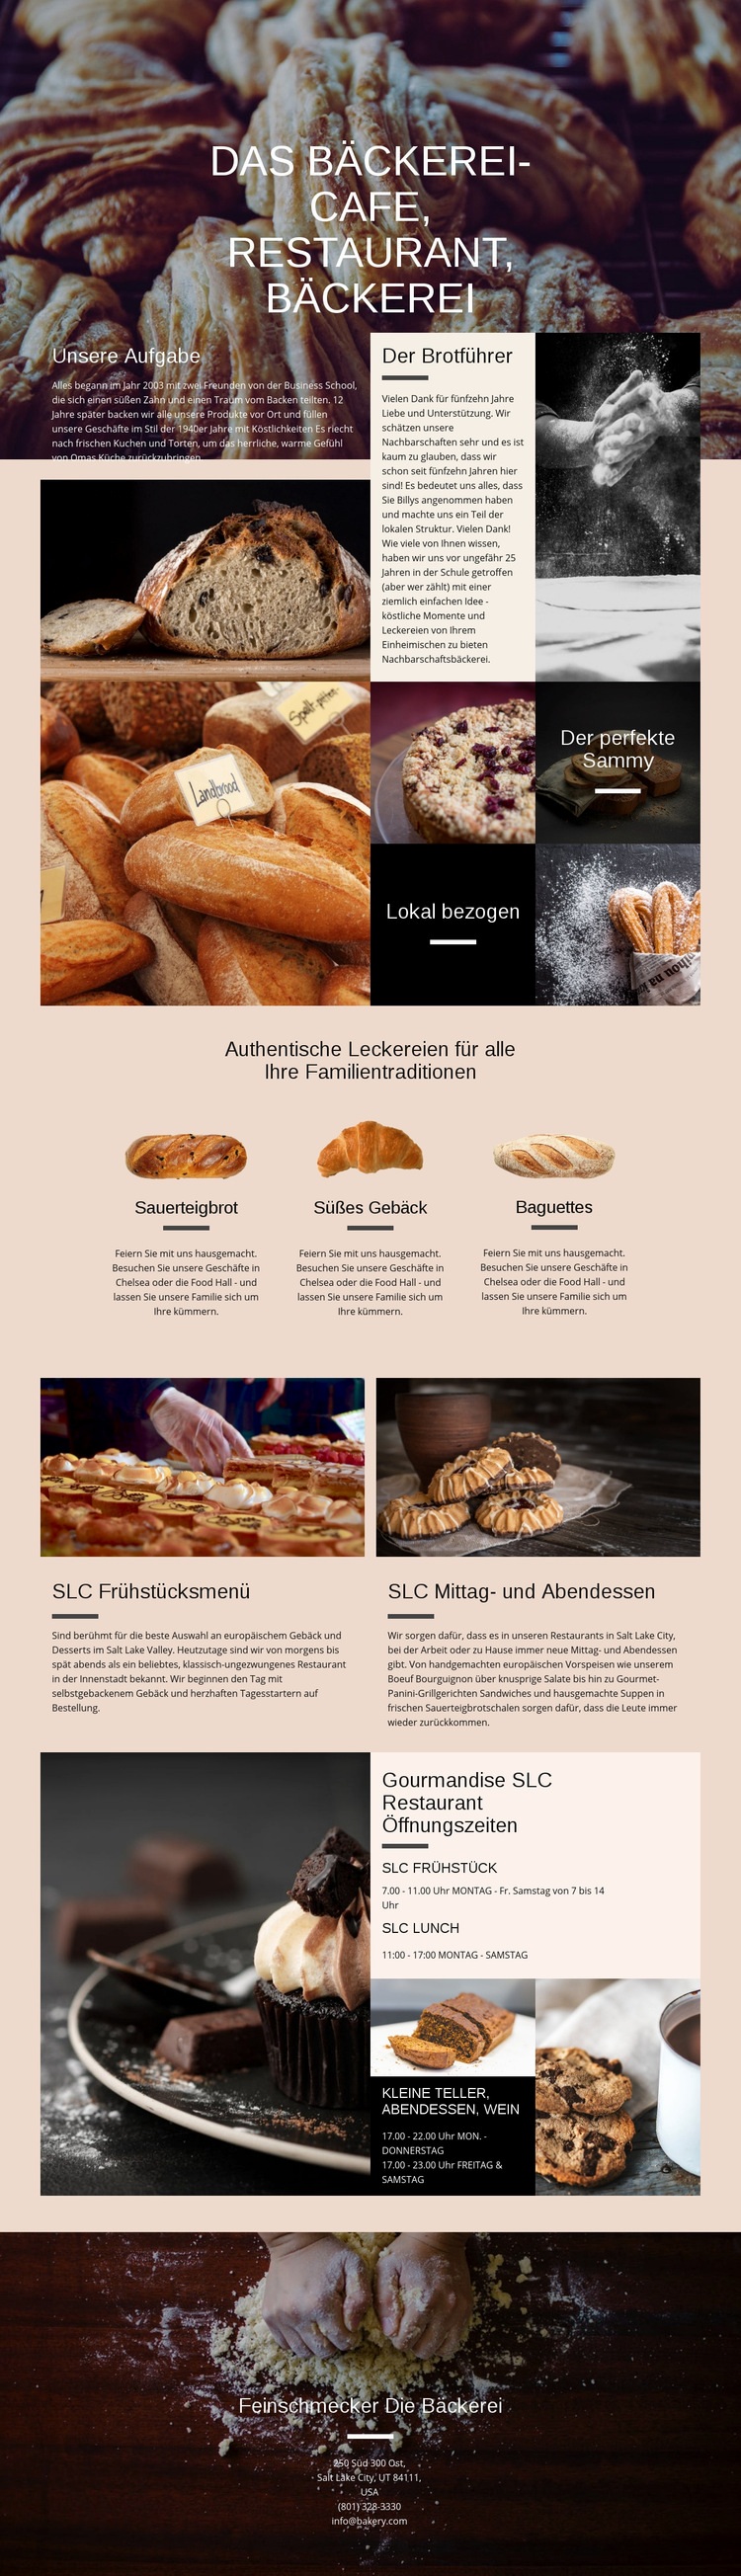 Die Bäckerei Website design